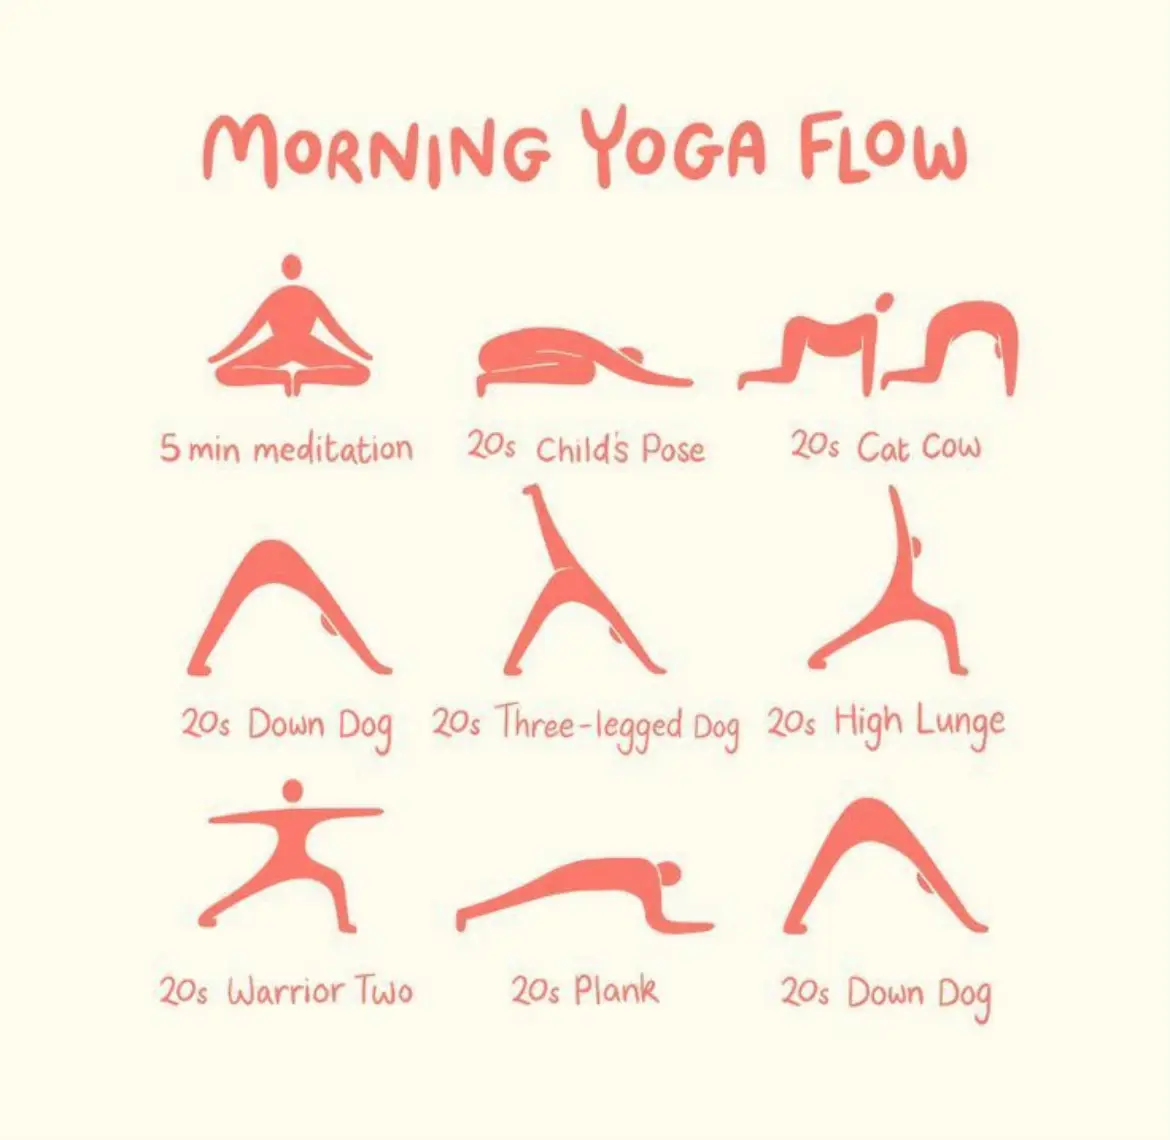 Yoga Express (10 Minutes) 